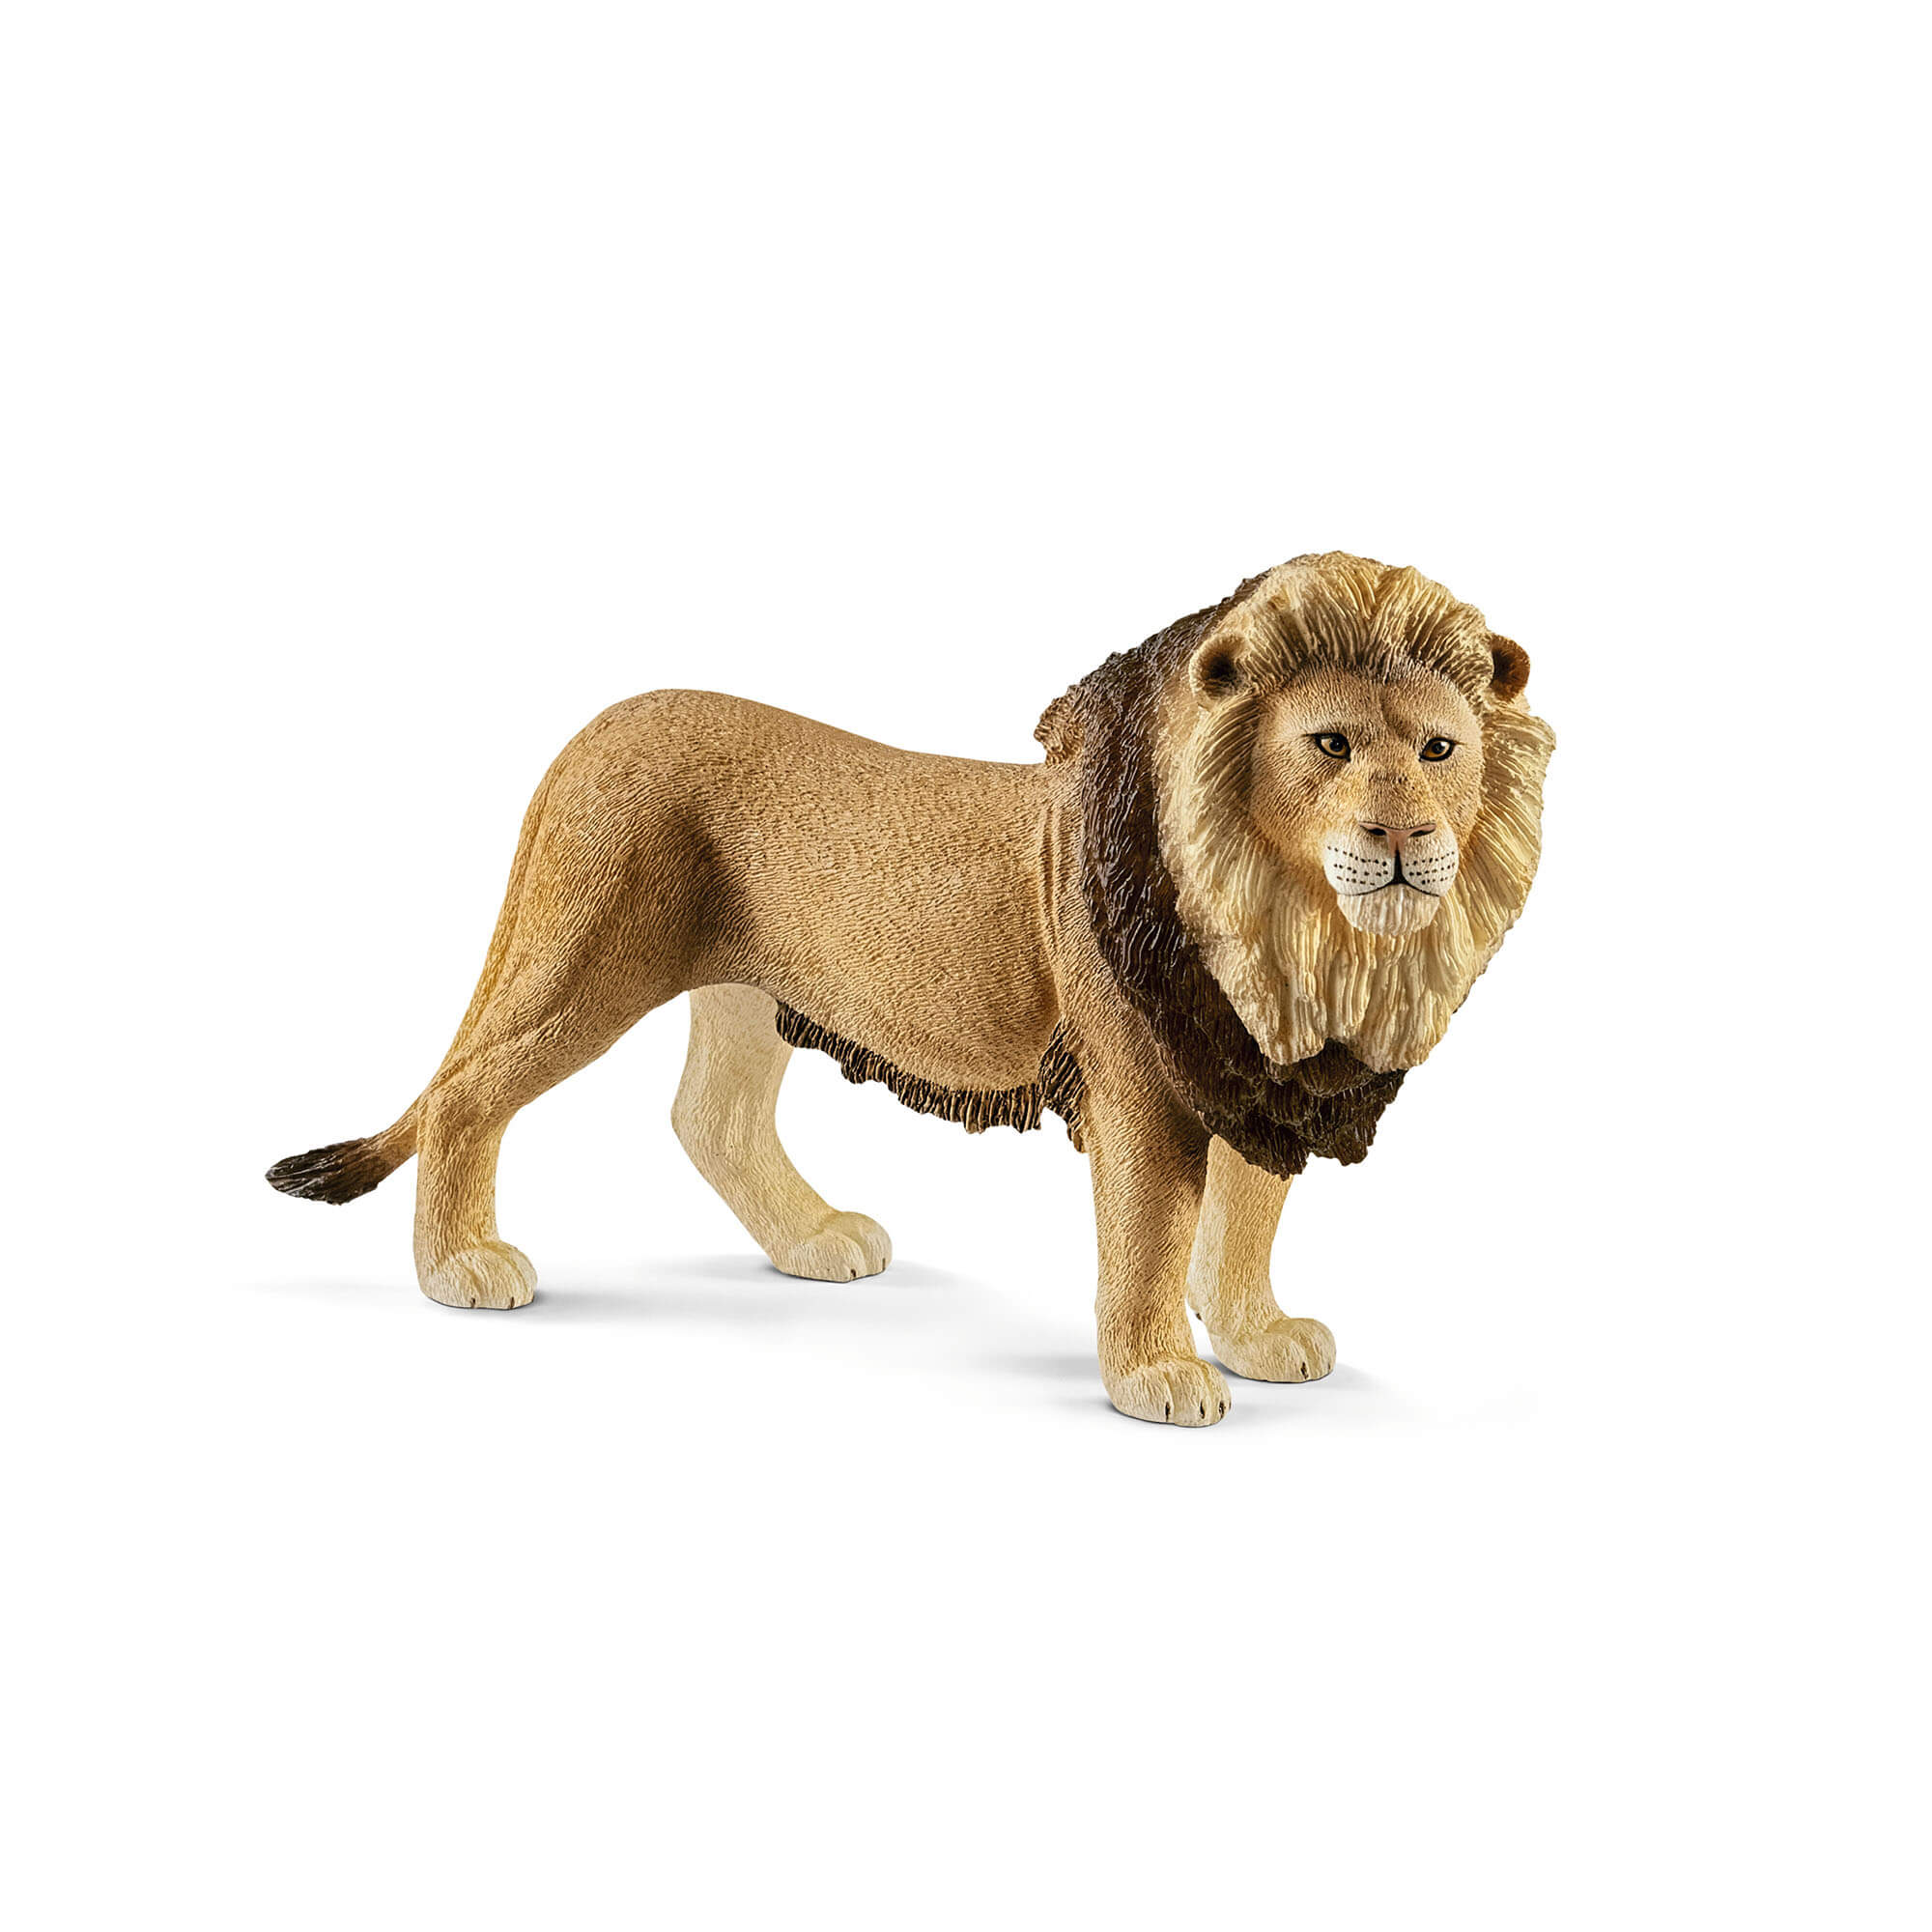 Schleich Wild Life Lion Animal Figure